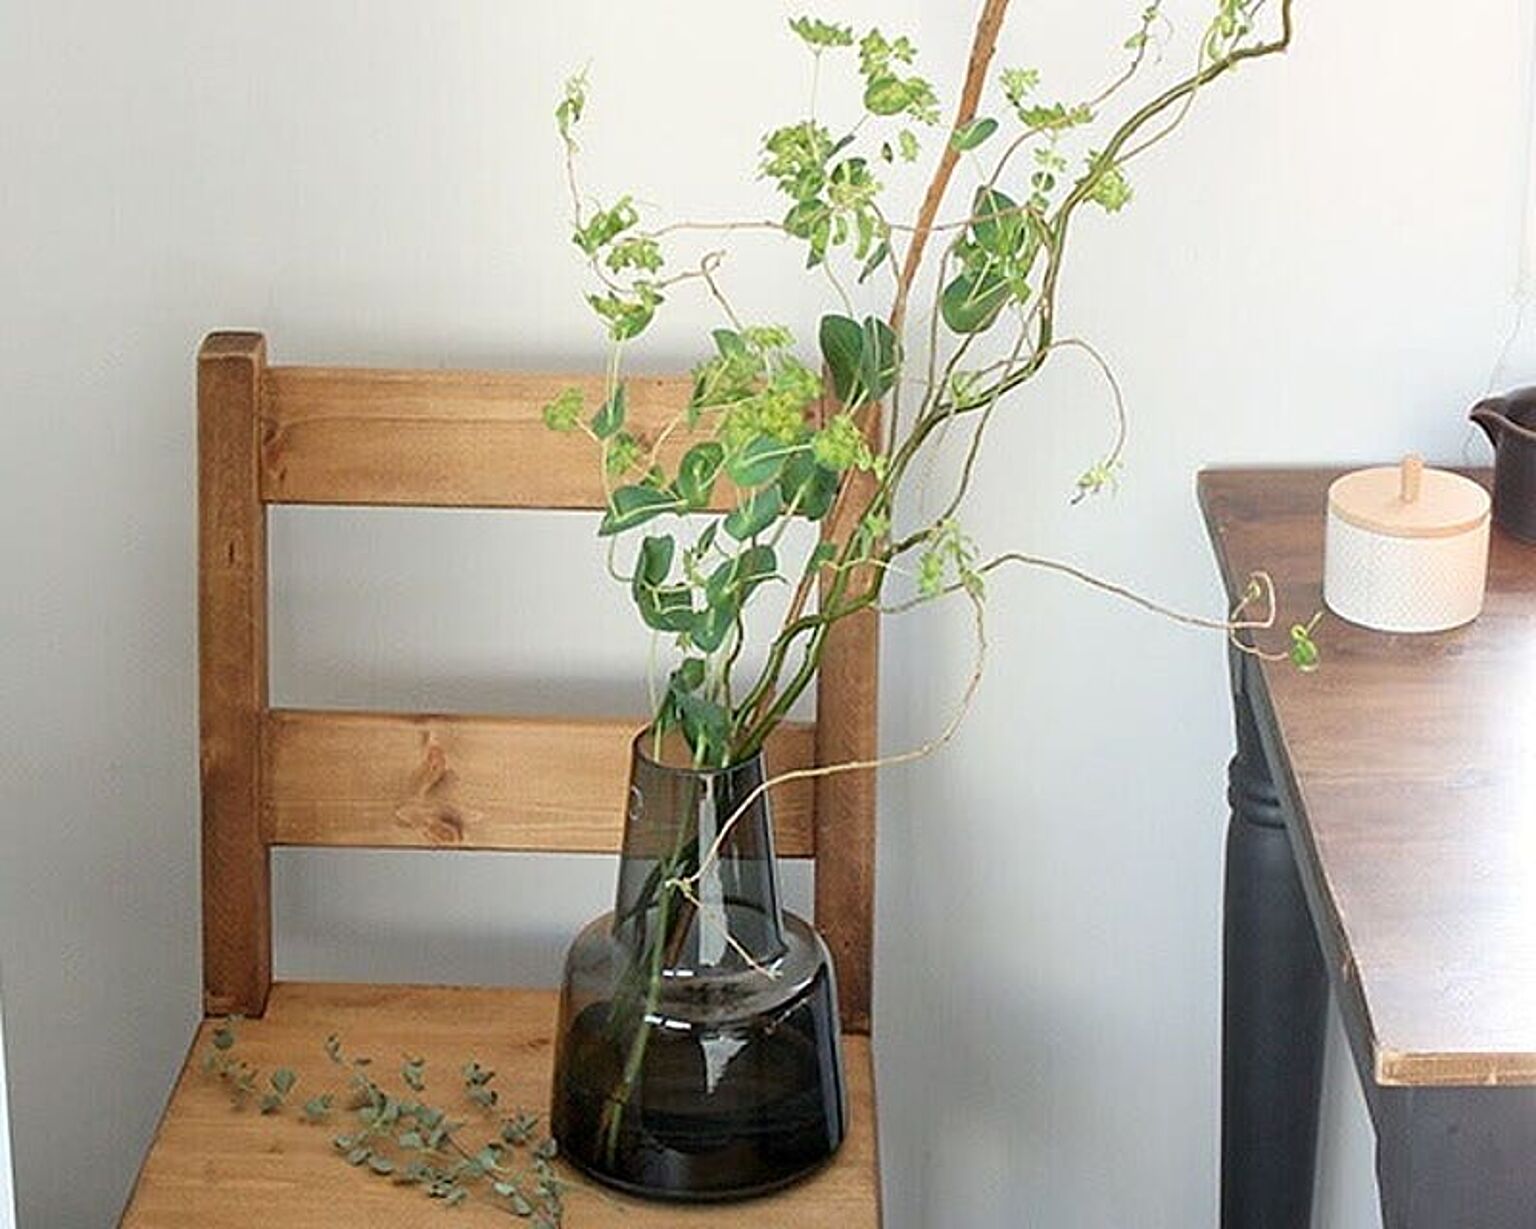 ホルムガード フローラ ベース 24cm ミディアム スモーク Holmegaard Flora vase